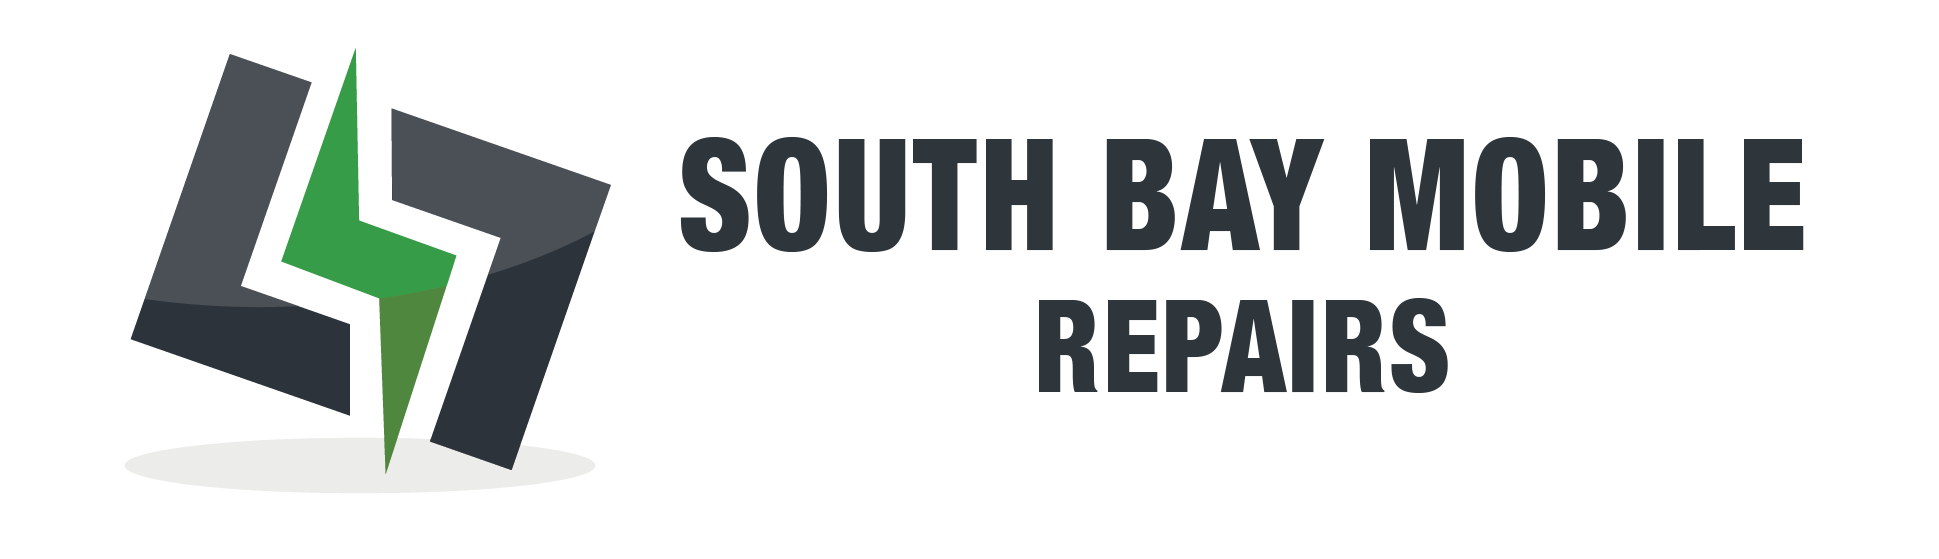 South Bay Mobile Repairs